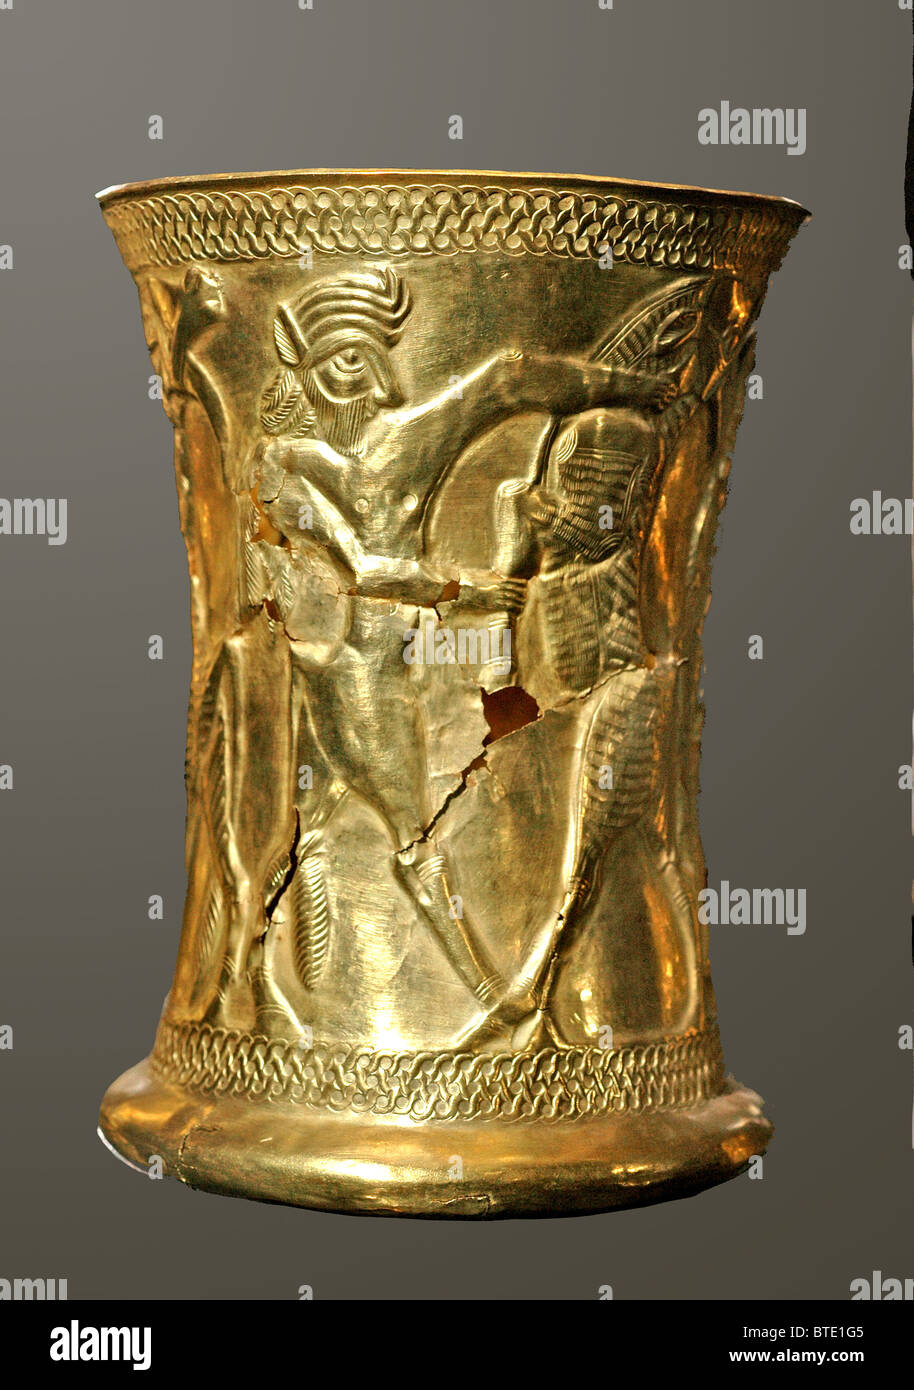 5316. Gobelet d'or orné de créatures mythologiques datant c. 1200 BC. Le nord de l'Iran Banque D'Images